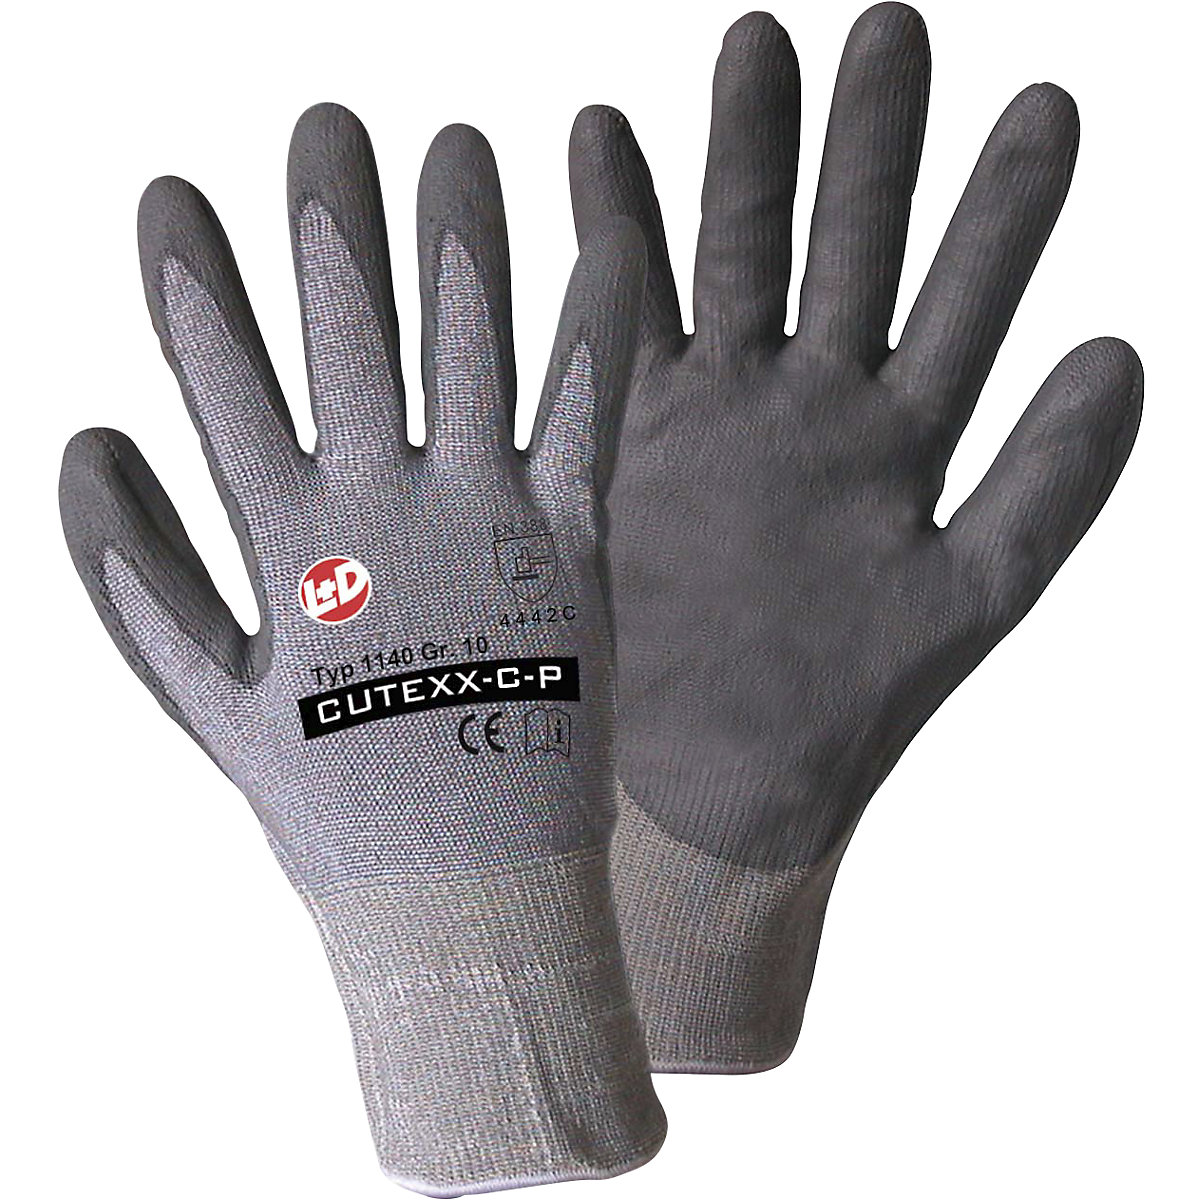 Handschuhe CUTEXX-C-P Leipold+Döhle